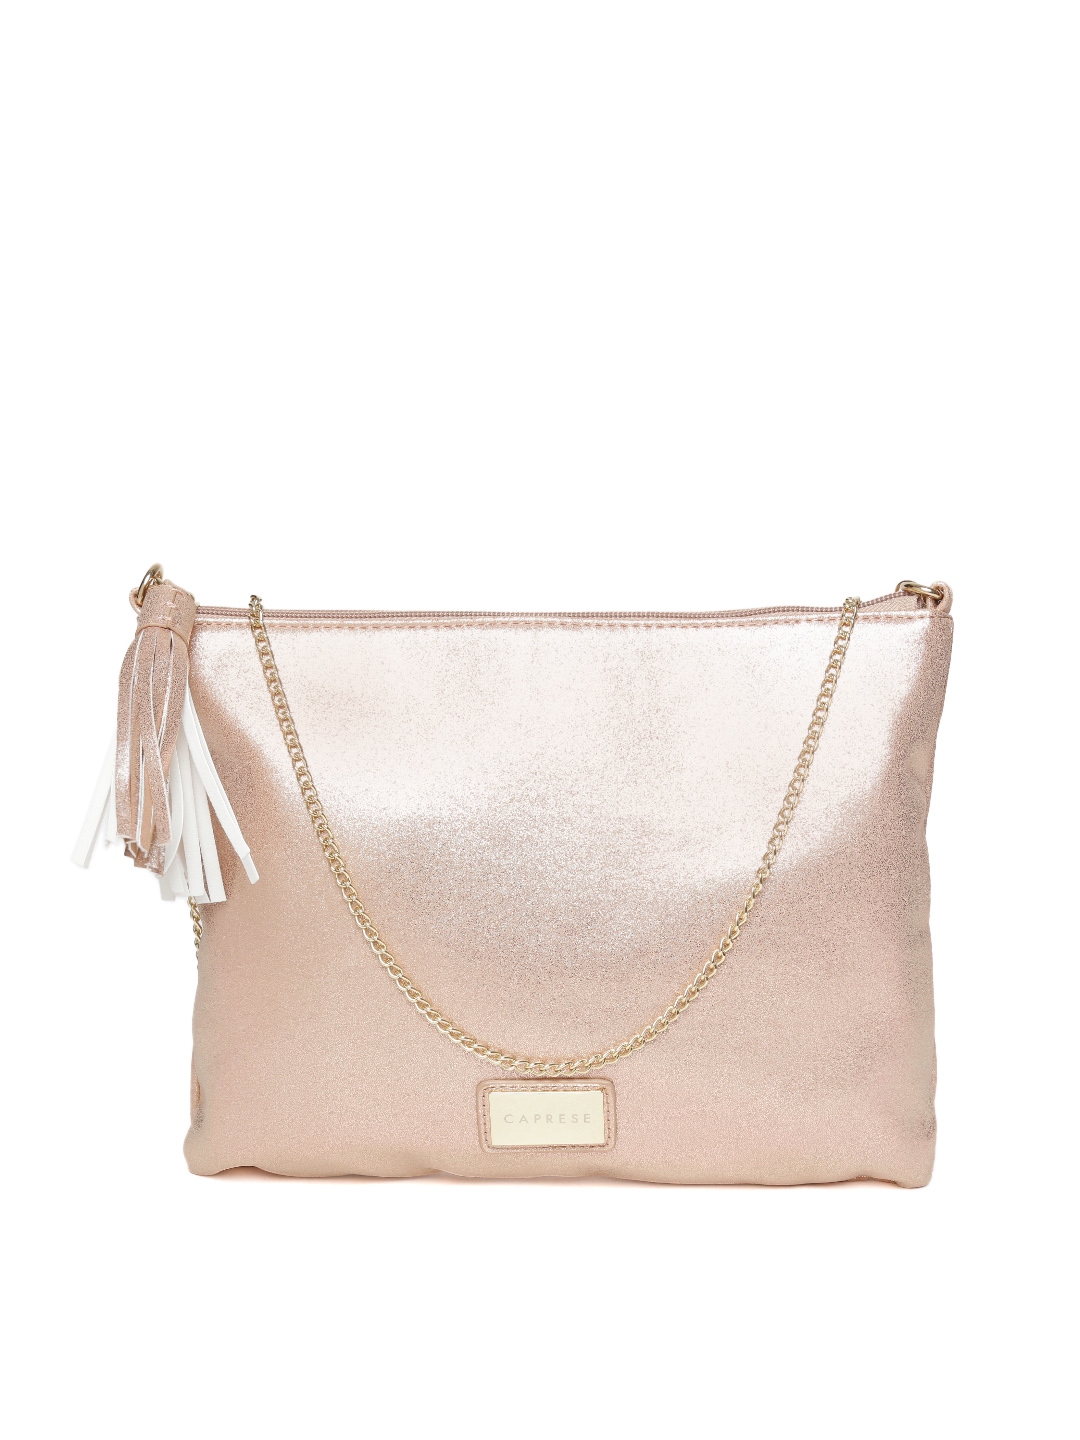 Buy Beige Handbags for Women by CAPRESE Online | Ajio.com